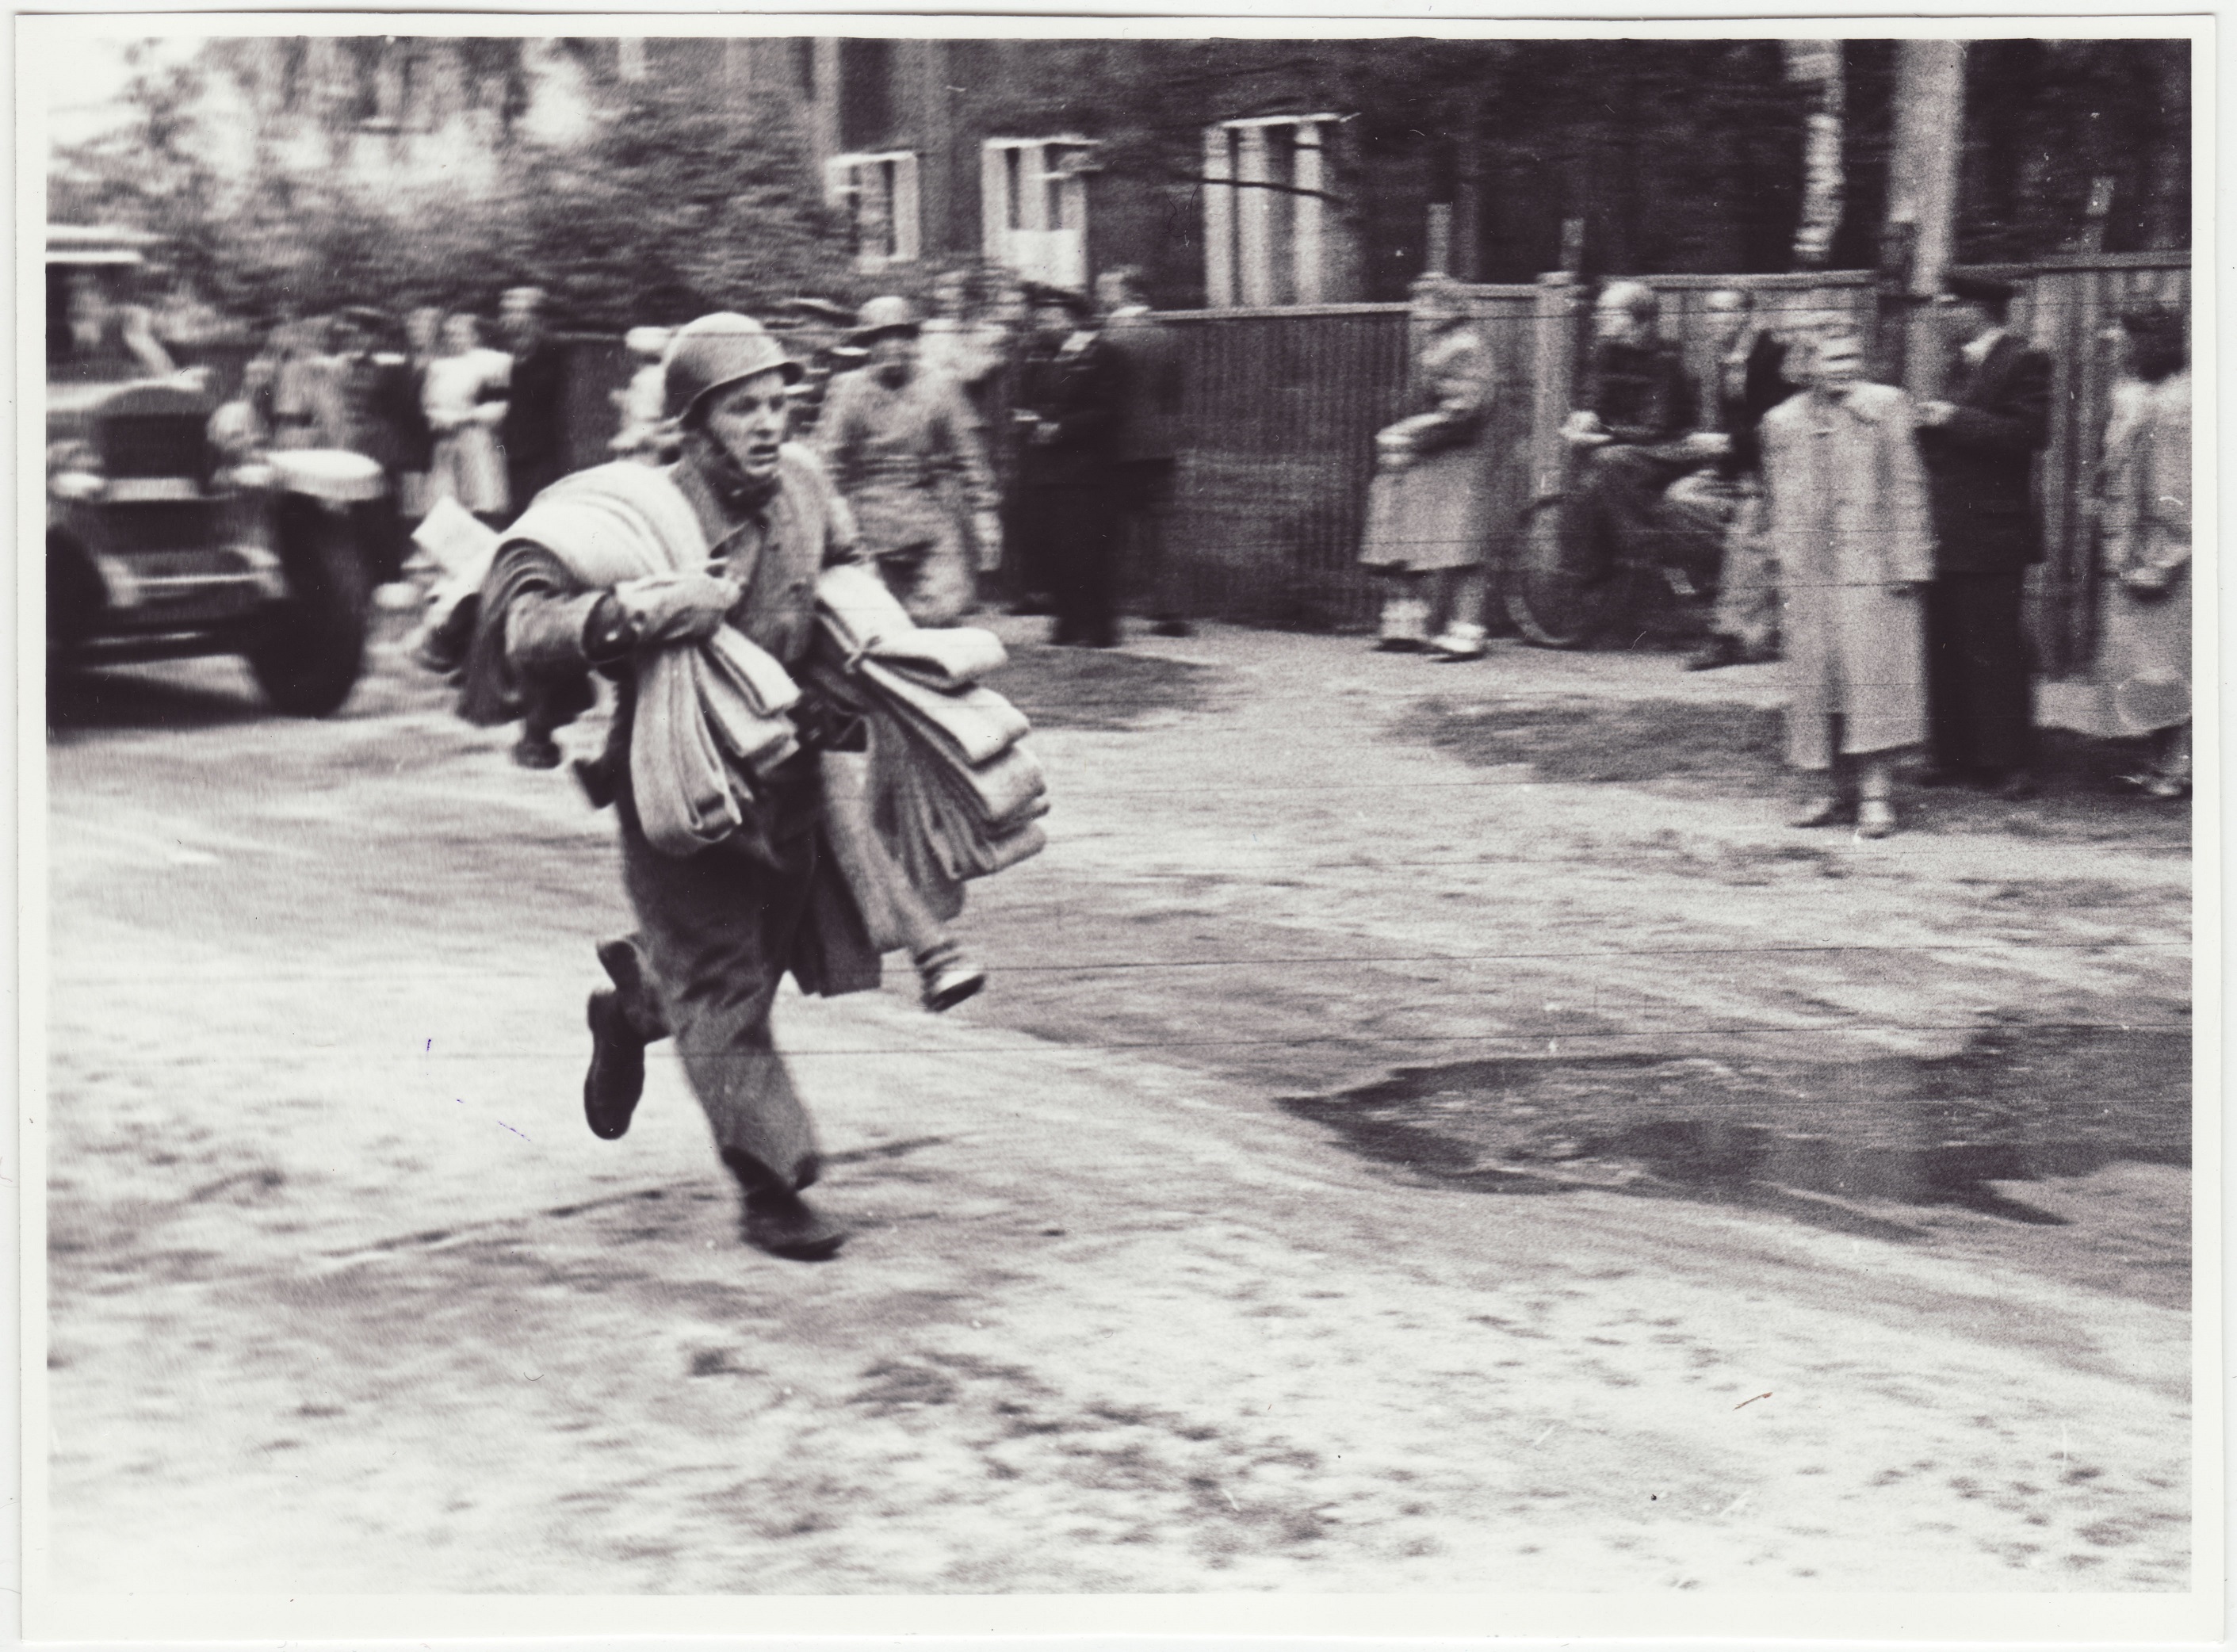 Komandodevahelised tuletõrjevõistlused Tallinnas: voolikute kandmine, 1950.a.